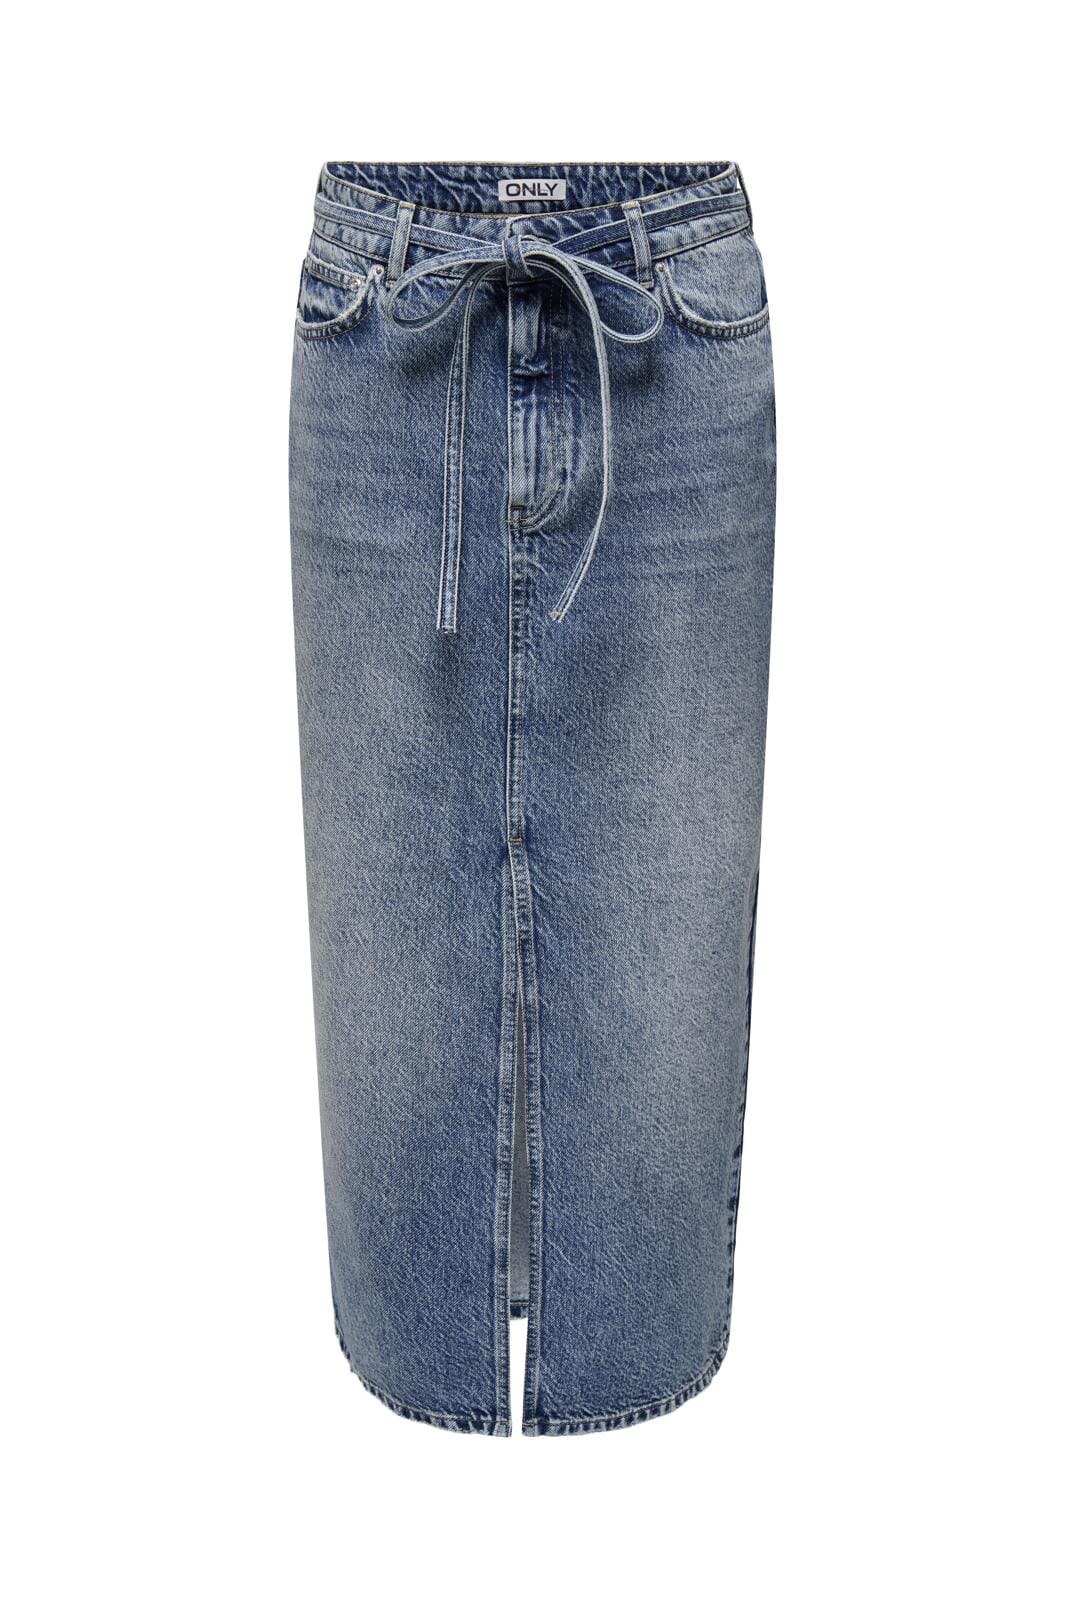 Only - Onlgianna Belted Midi Skirt Dot - 4671715 Medium Blue Denim